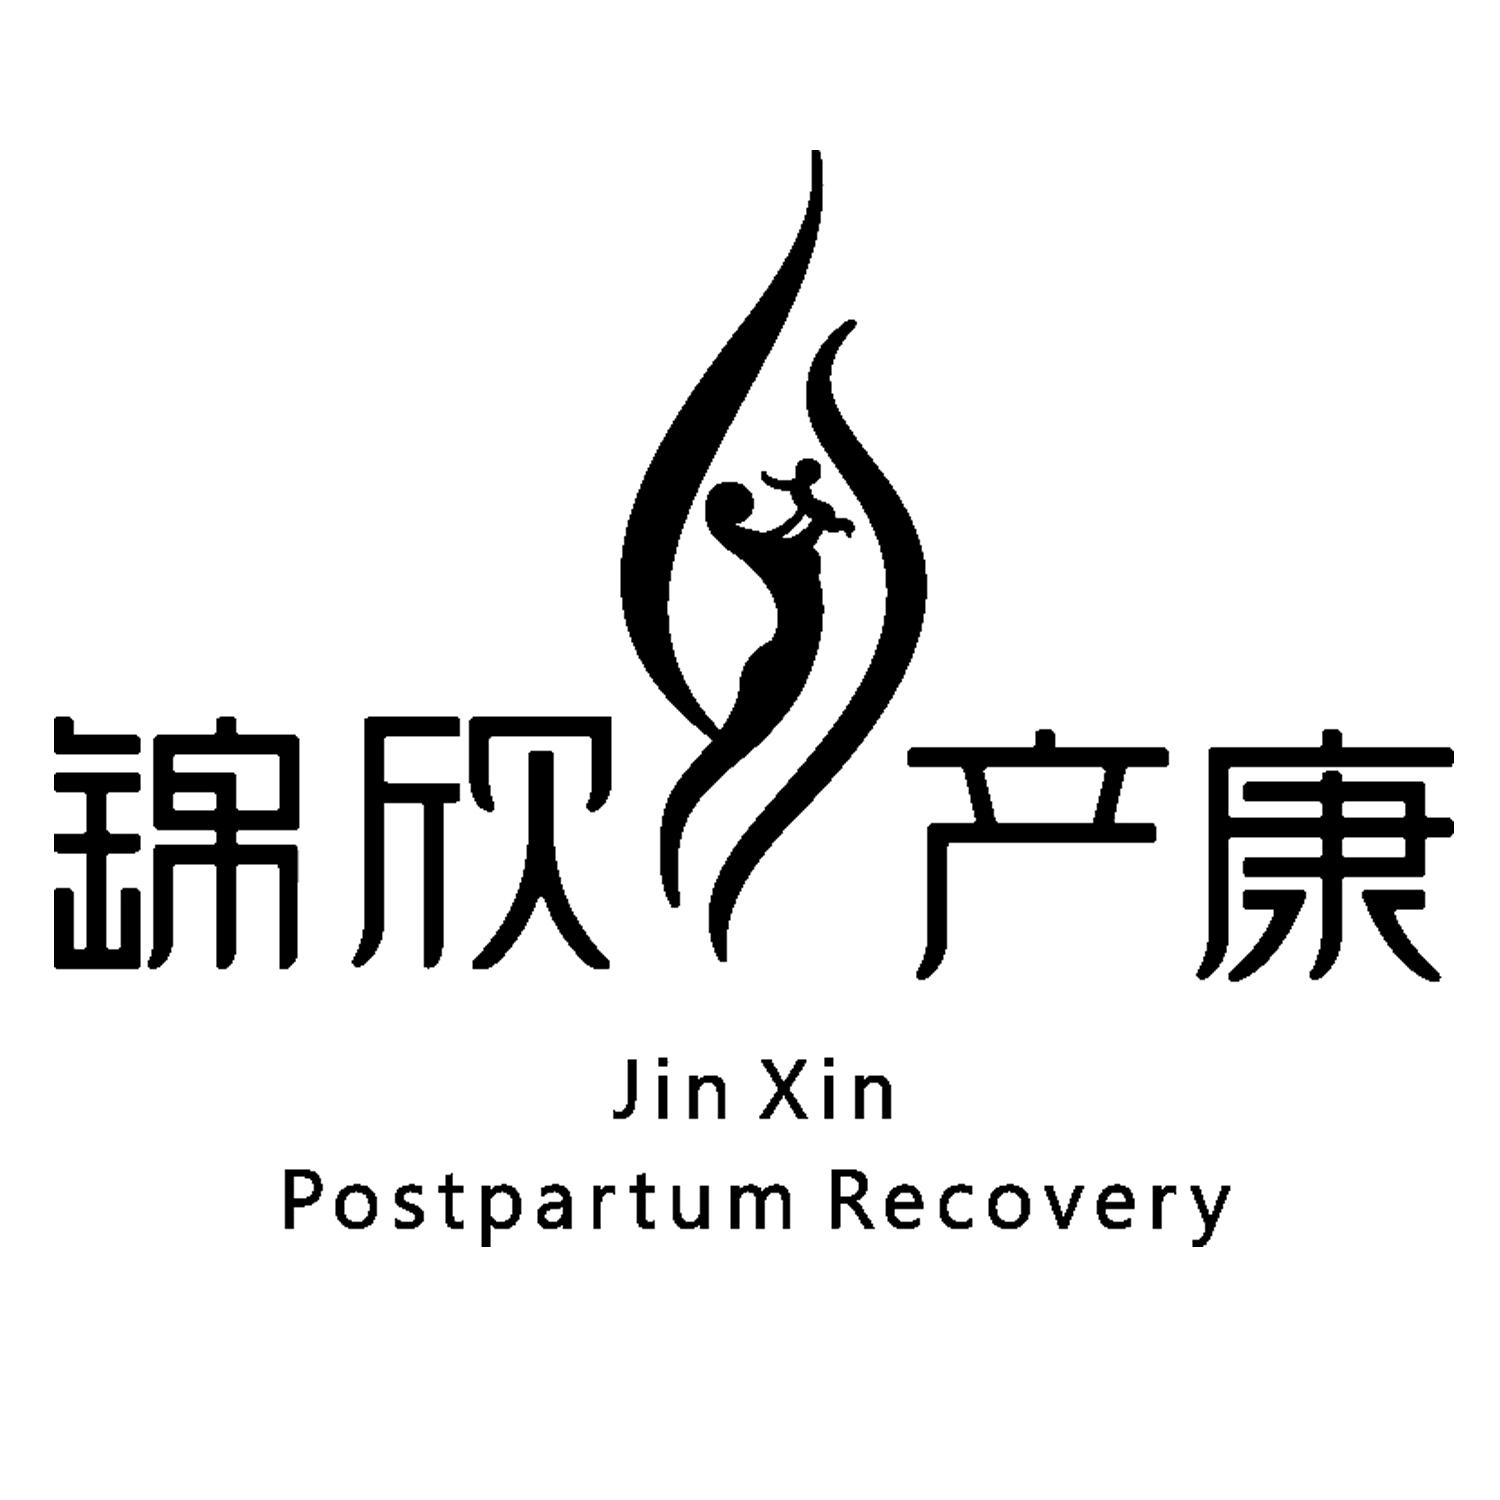 商标文字锦欣产康 jin xin postpartum recovery商标